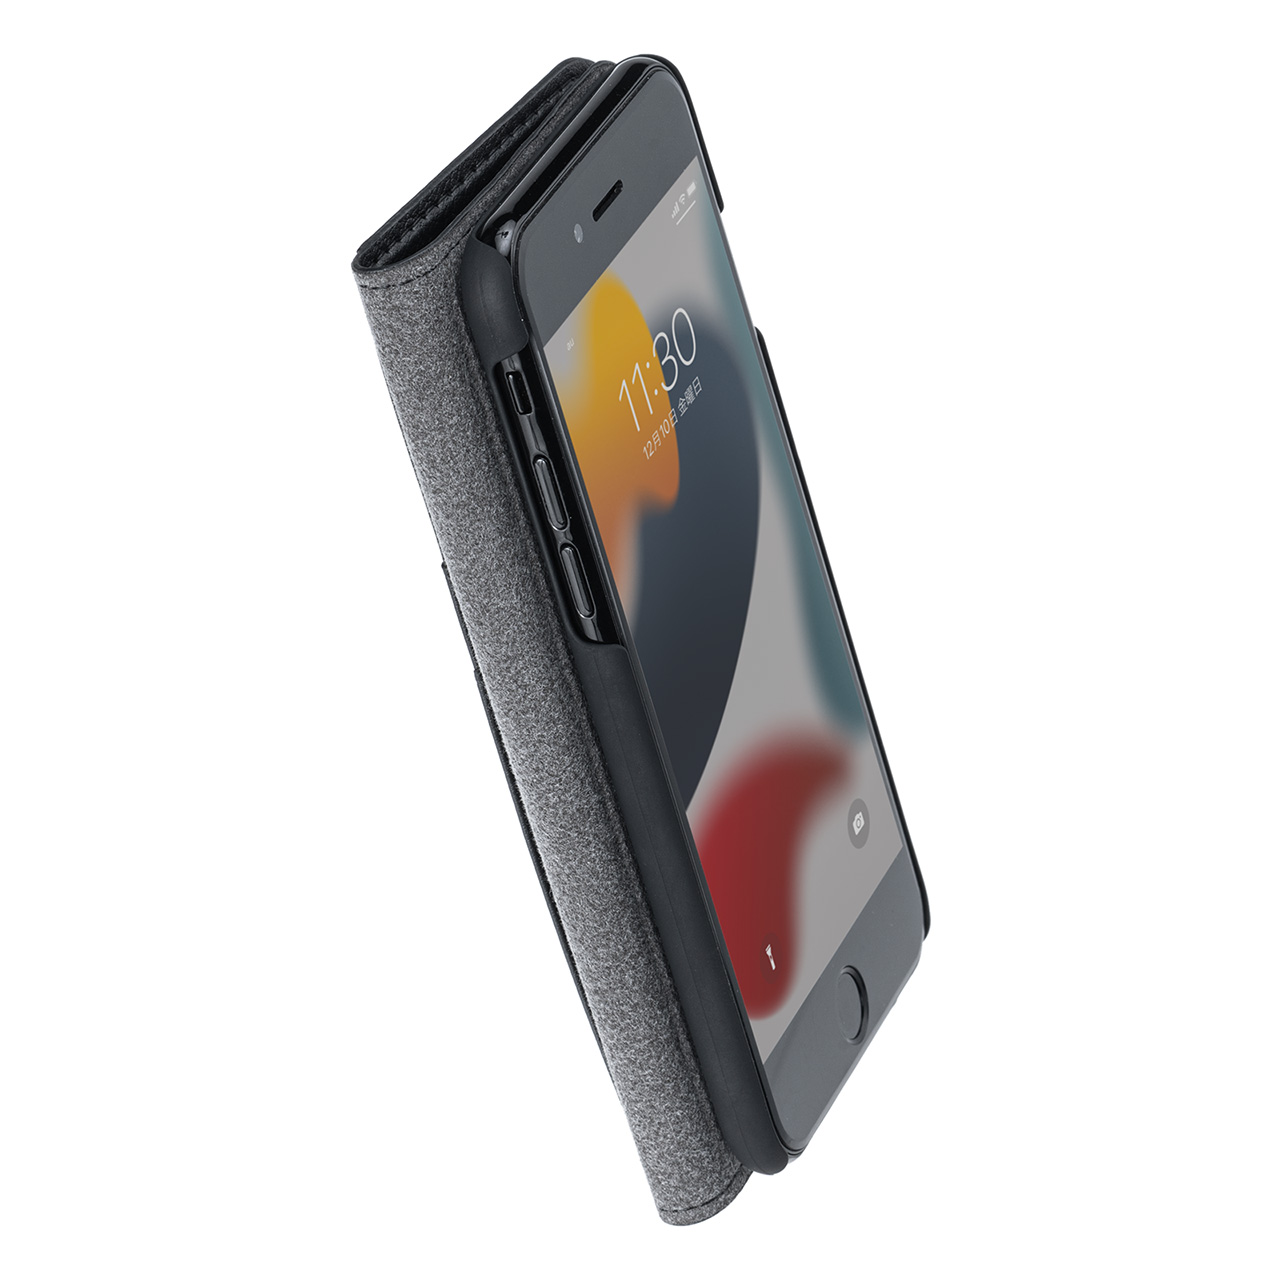 iPhone SE（第3/第2世代）手帳型ケース 保護フィルムセット iPhone 8/7 PUレザー ブラック ガラスフィルム 日本メーカー製強化ガラス 202-SPC031BKSET